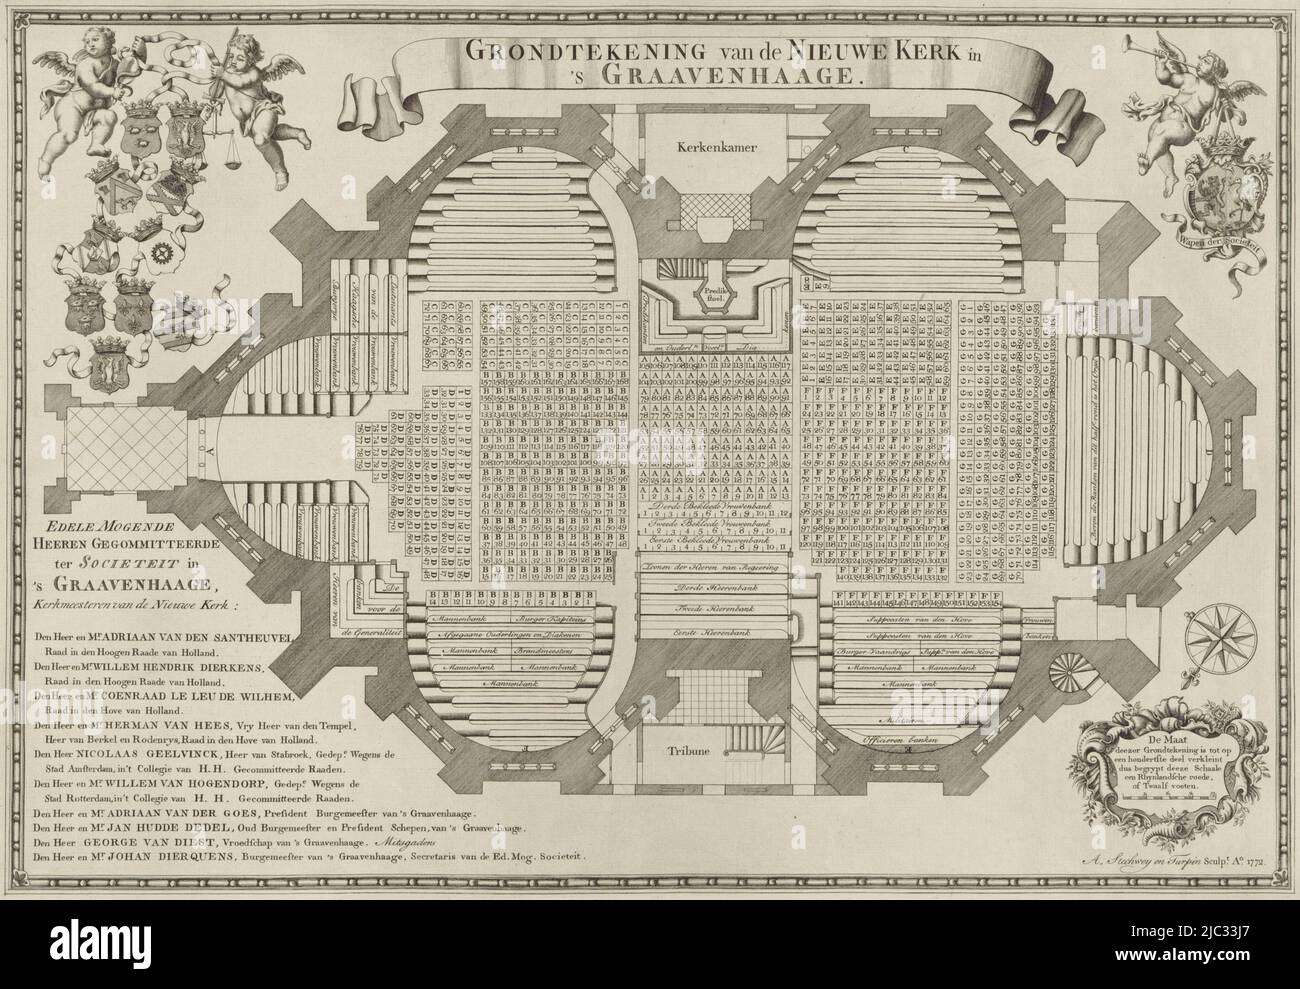 Mapa del Nieuwe Kerk, indicando los asientos y los bancos. Abajo a la izquierda hay una lista de los churchwardens. Arriba izquierda dos putti con sus escudos de brazos. Arriba a la derecha Un putto con trompeta y el escudo de armas de la Sociedad de La Haya, Mapa de la Nieuwe Kerk en La Haya., impresor: Anthony Stechwey, (mencionado en el objeto), impresor: Jacobus Turpin, (mencionado en el objeto), La Haya, 1772, papel, grabado, grabado, al. 362 mm x al. 520 mm Foto de stock